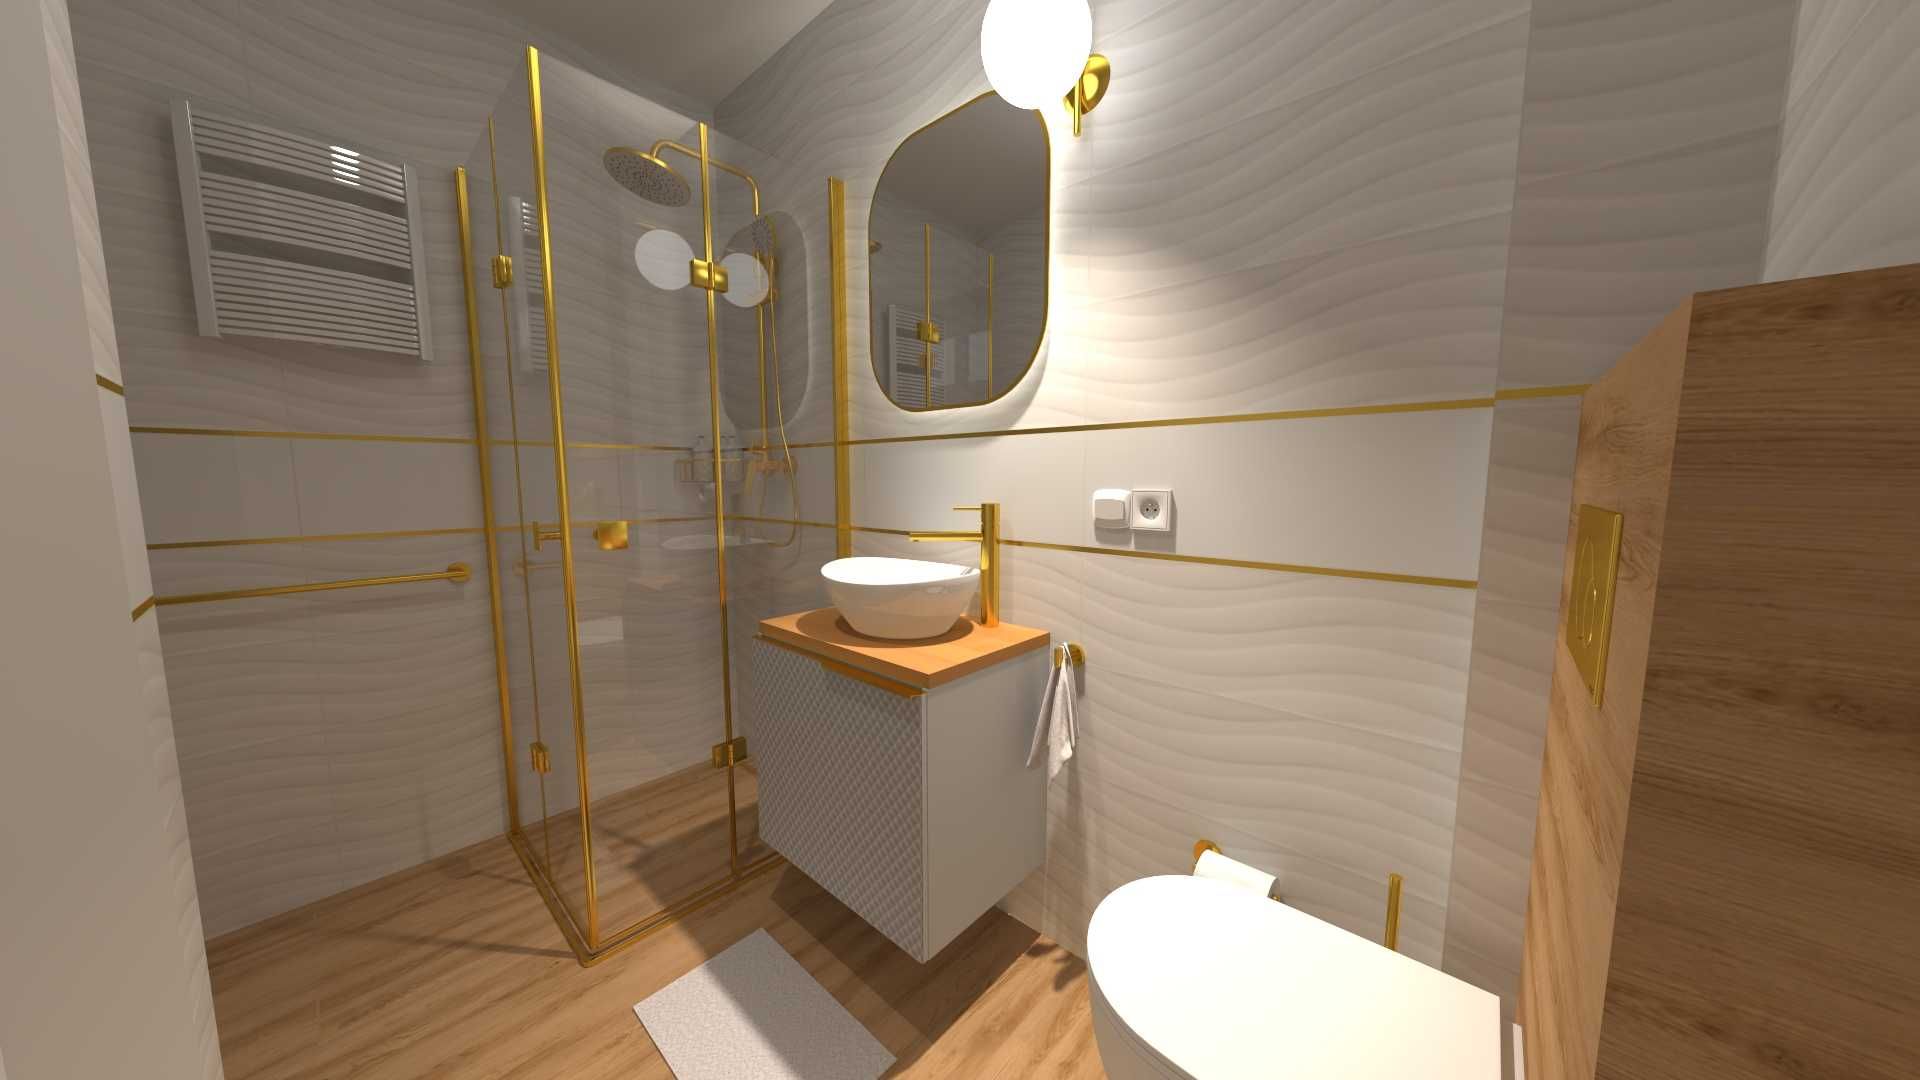 Projekt łazienki wizualizacja płytki wyposażenie rzuty techniczne